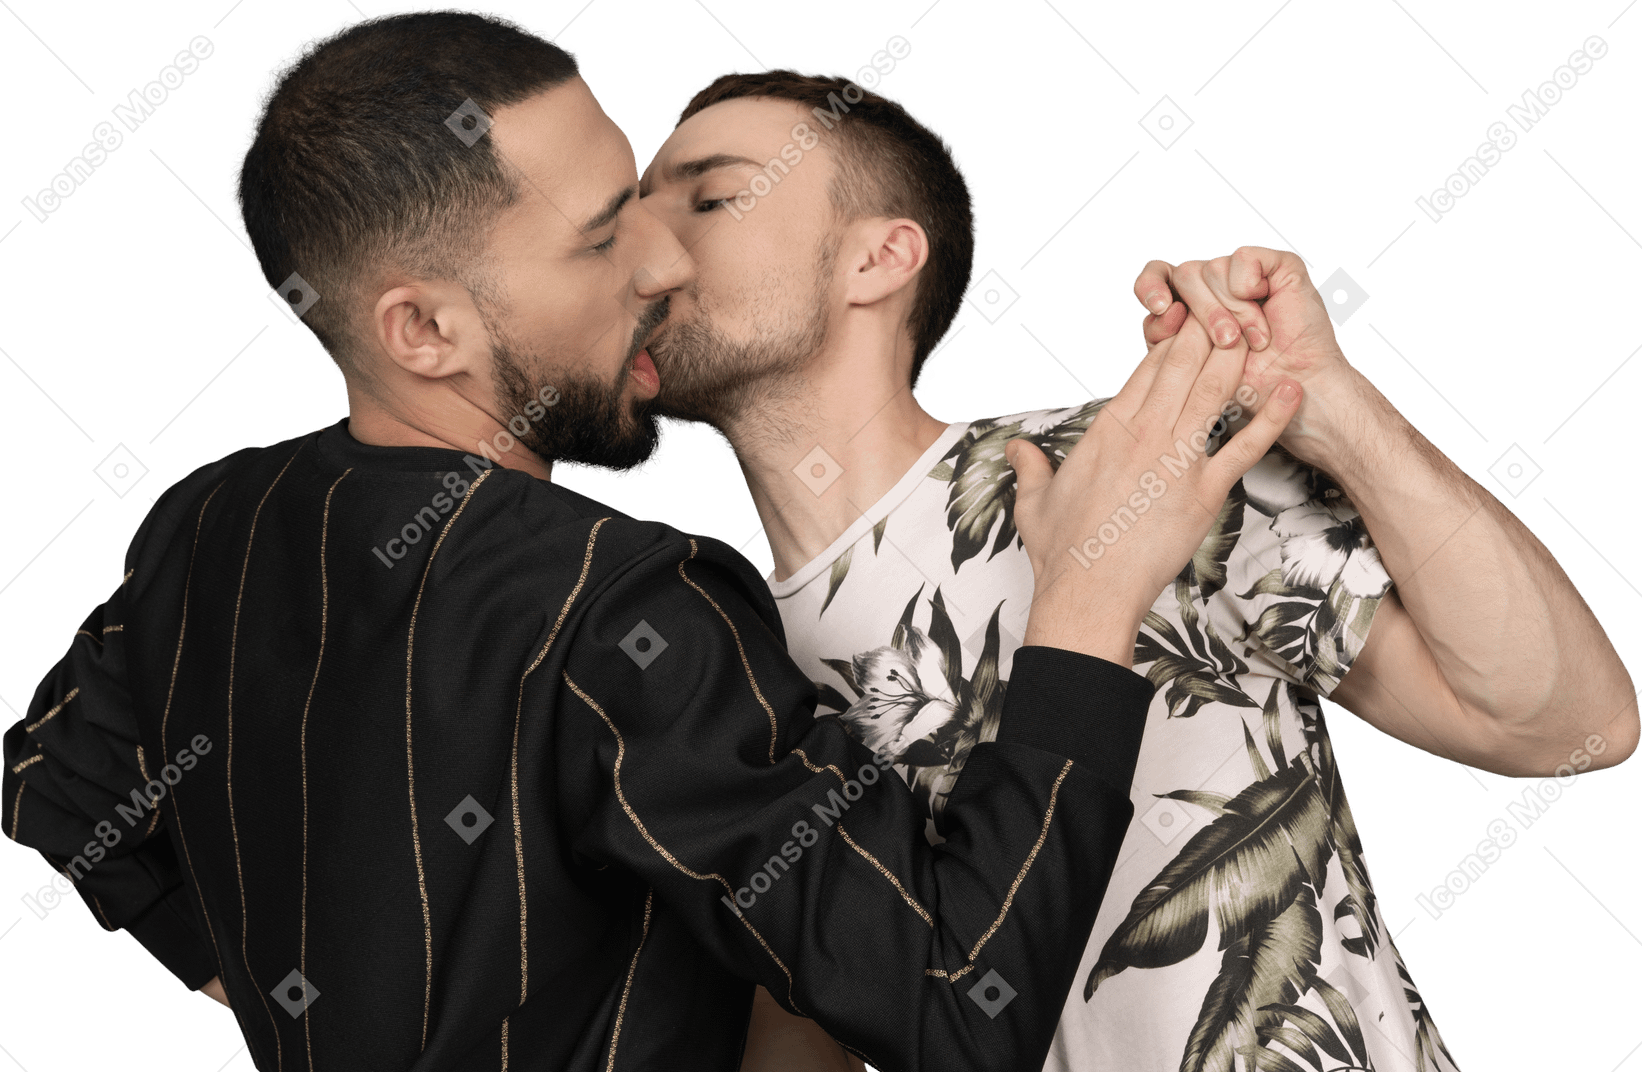 Giovane uomo caucasico che si appoggia al suo partner e gli tiene la mano nel tentativo di baciarlo